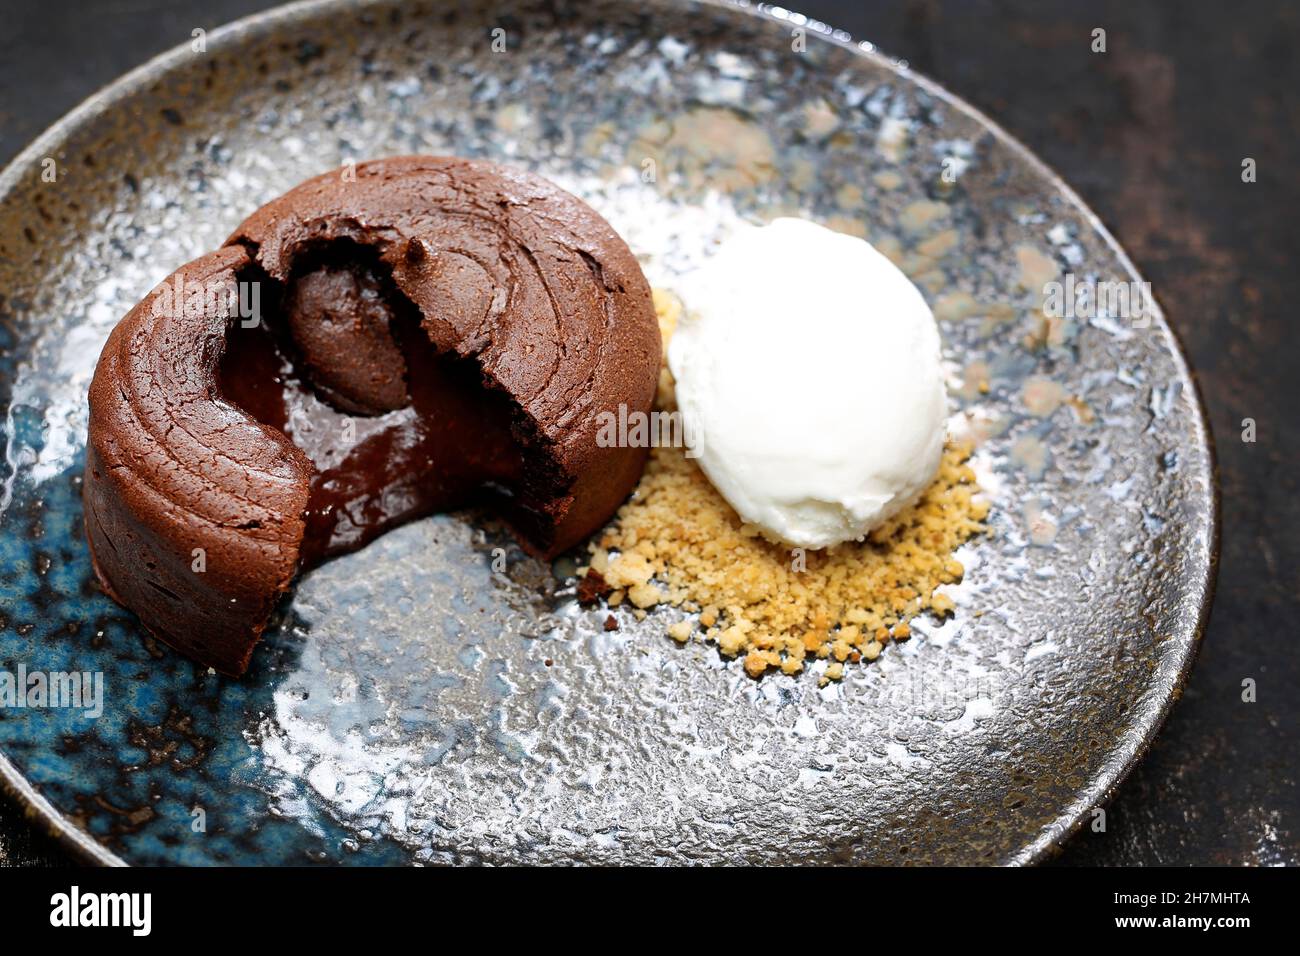 Gâteau au chocolat avec glace et noix.Délicieux dessert sucré.Un délicieux plat.photographie culinaire.Suggestion de servir le plat. Banque D'Images